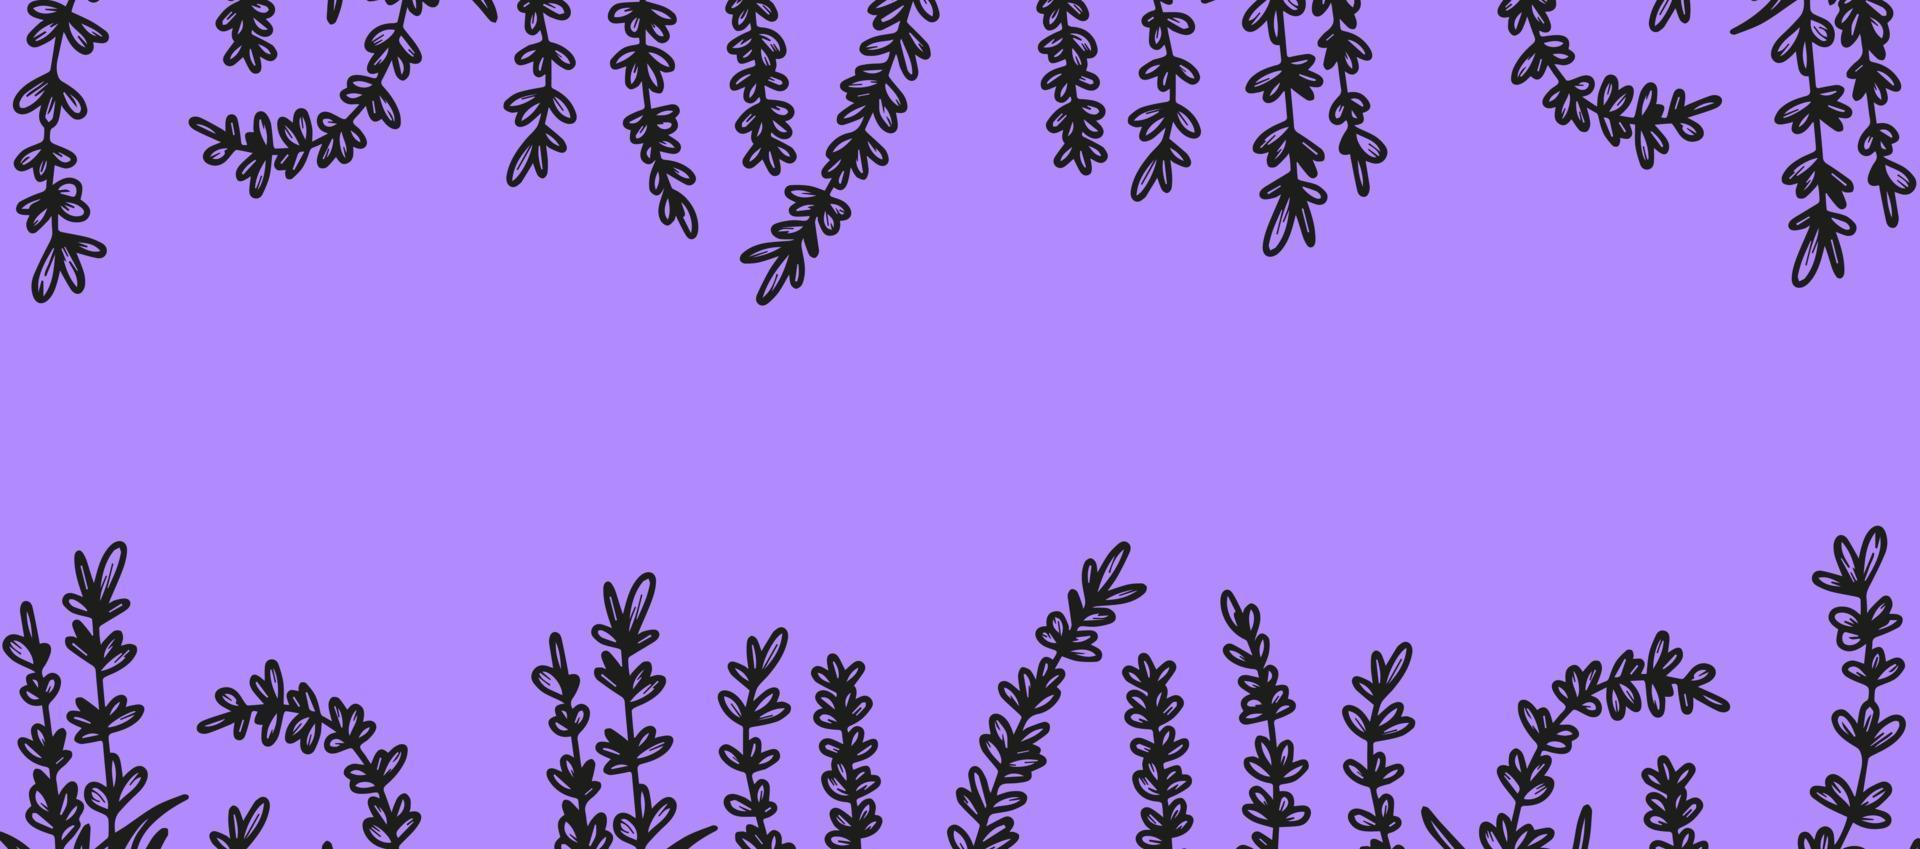 beau fond avec des fleurs de lavande dessinées à la main, des herbes médicales. pour créer une bannière, une affiche, des cartes postales. illustration vectorielle fond lilas. le concept de la provence française, une tendance botanique. vecteur